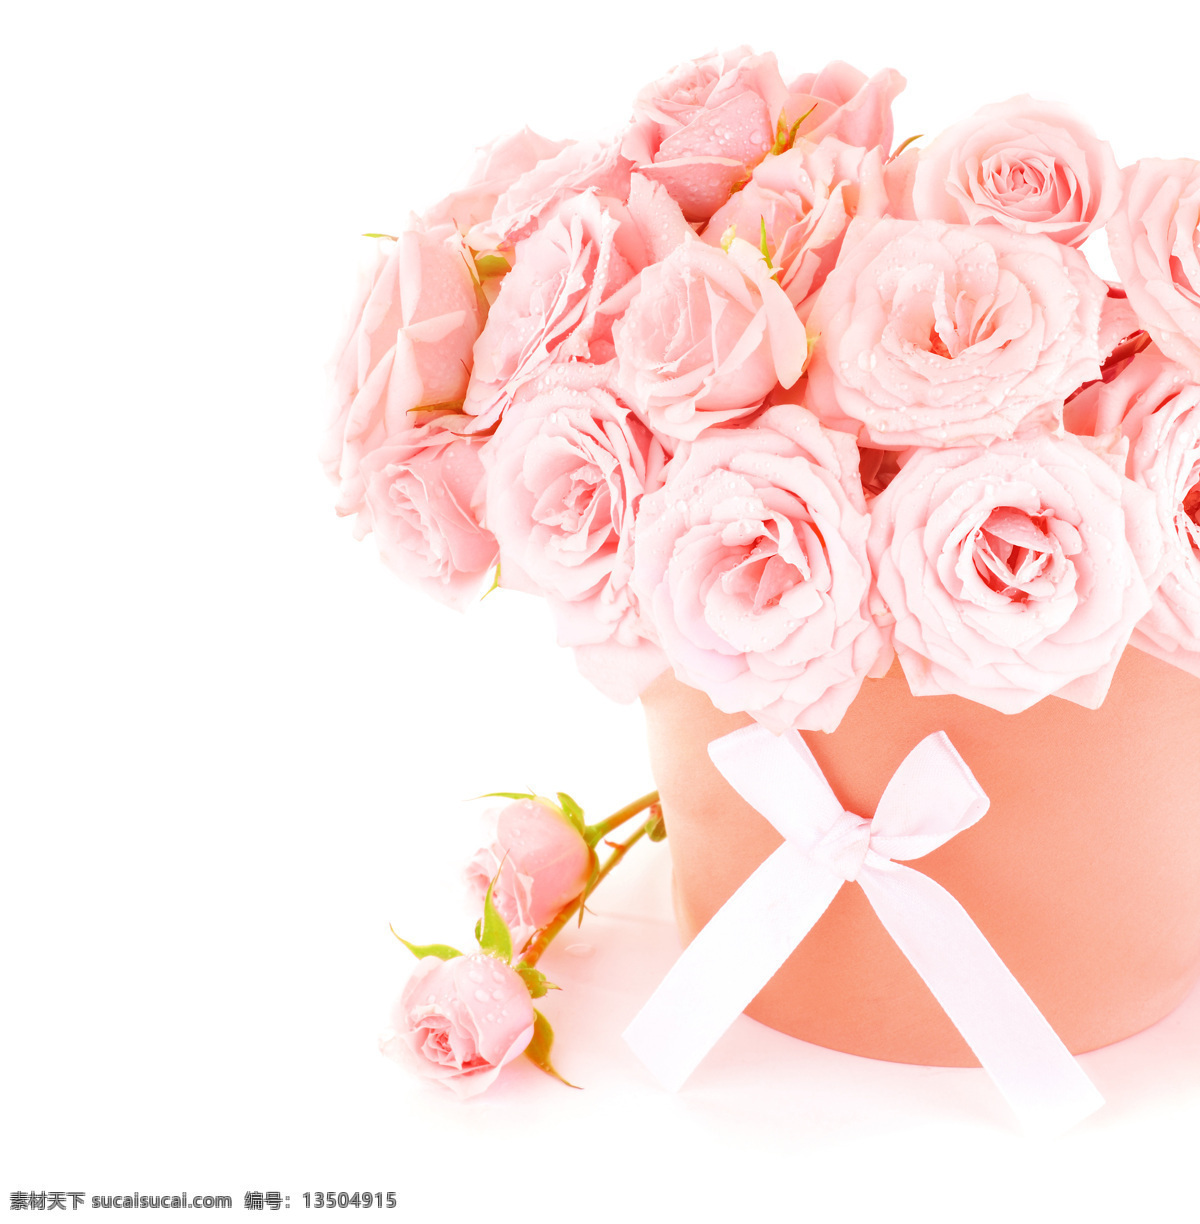 美丽鲜花 花朵 花卉 玫瑰花 粉红玫瑰 情人节 温馨 浪漫 花草树木 生物世界 白色